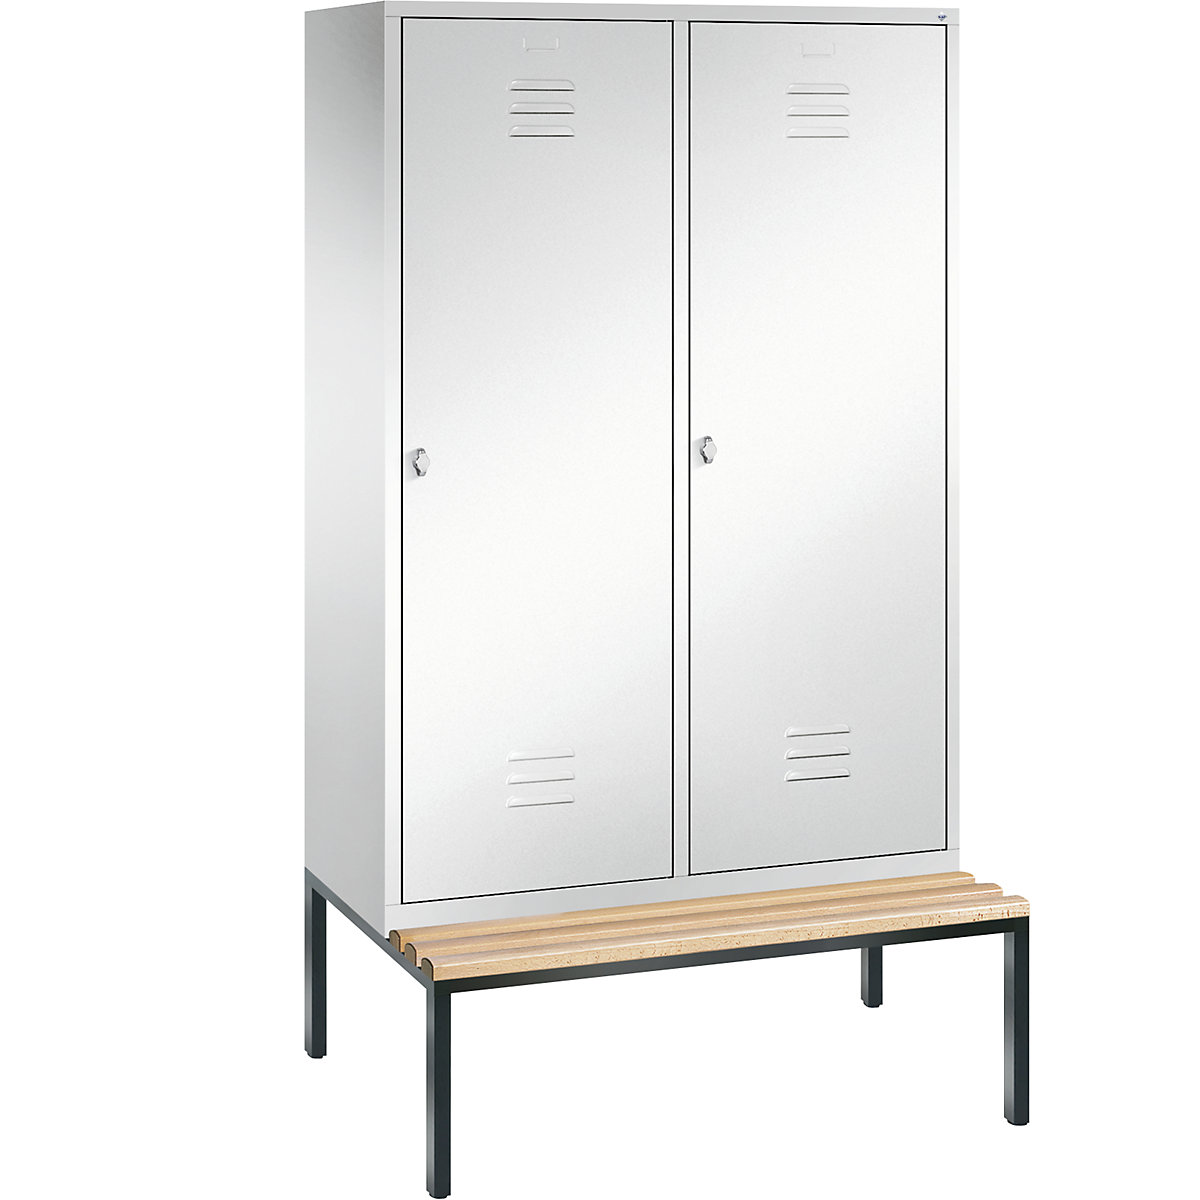 Šatní skříň s podstavnou lavicí CLASSIC s dveřmi přes 2 oddíly – C+P, 4 oddíly, šířka oddílu 300 mm, dopravní bílá-10